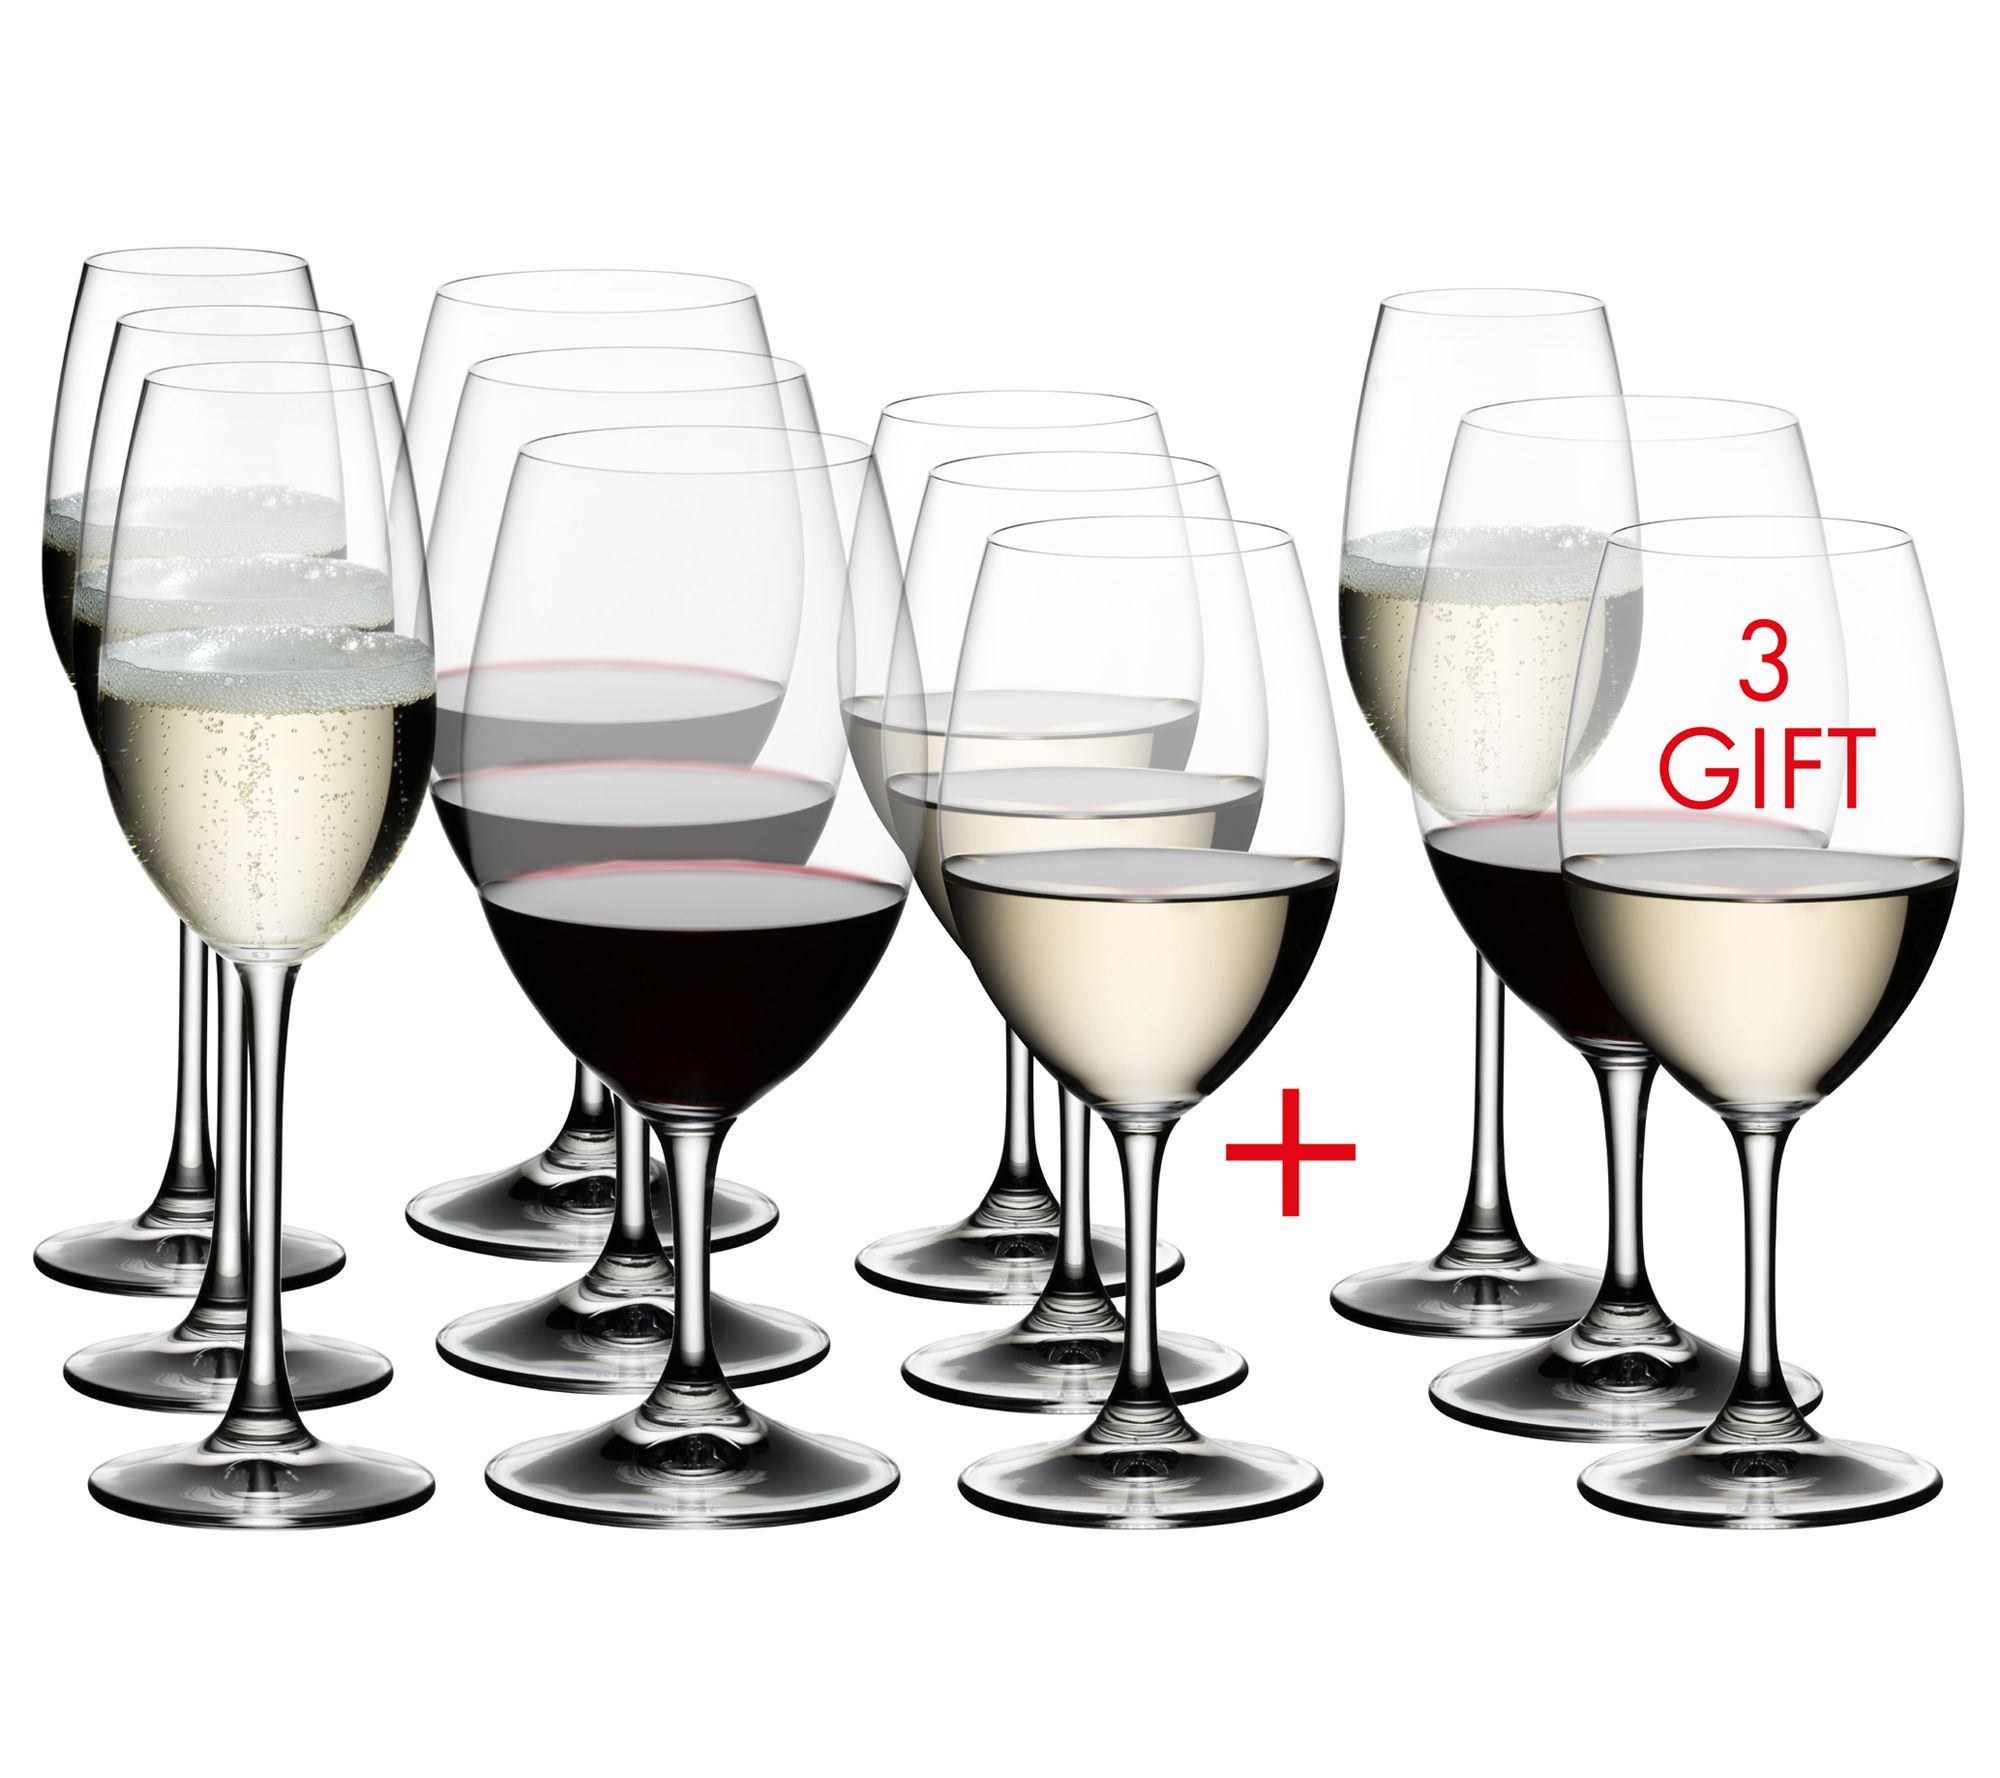 JoyJolt Layla Crystal White Wine Glasses - 13.5 oz - Set of 4